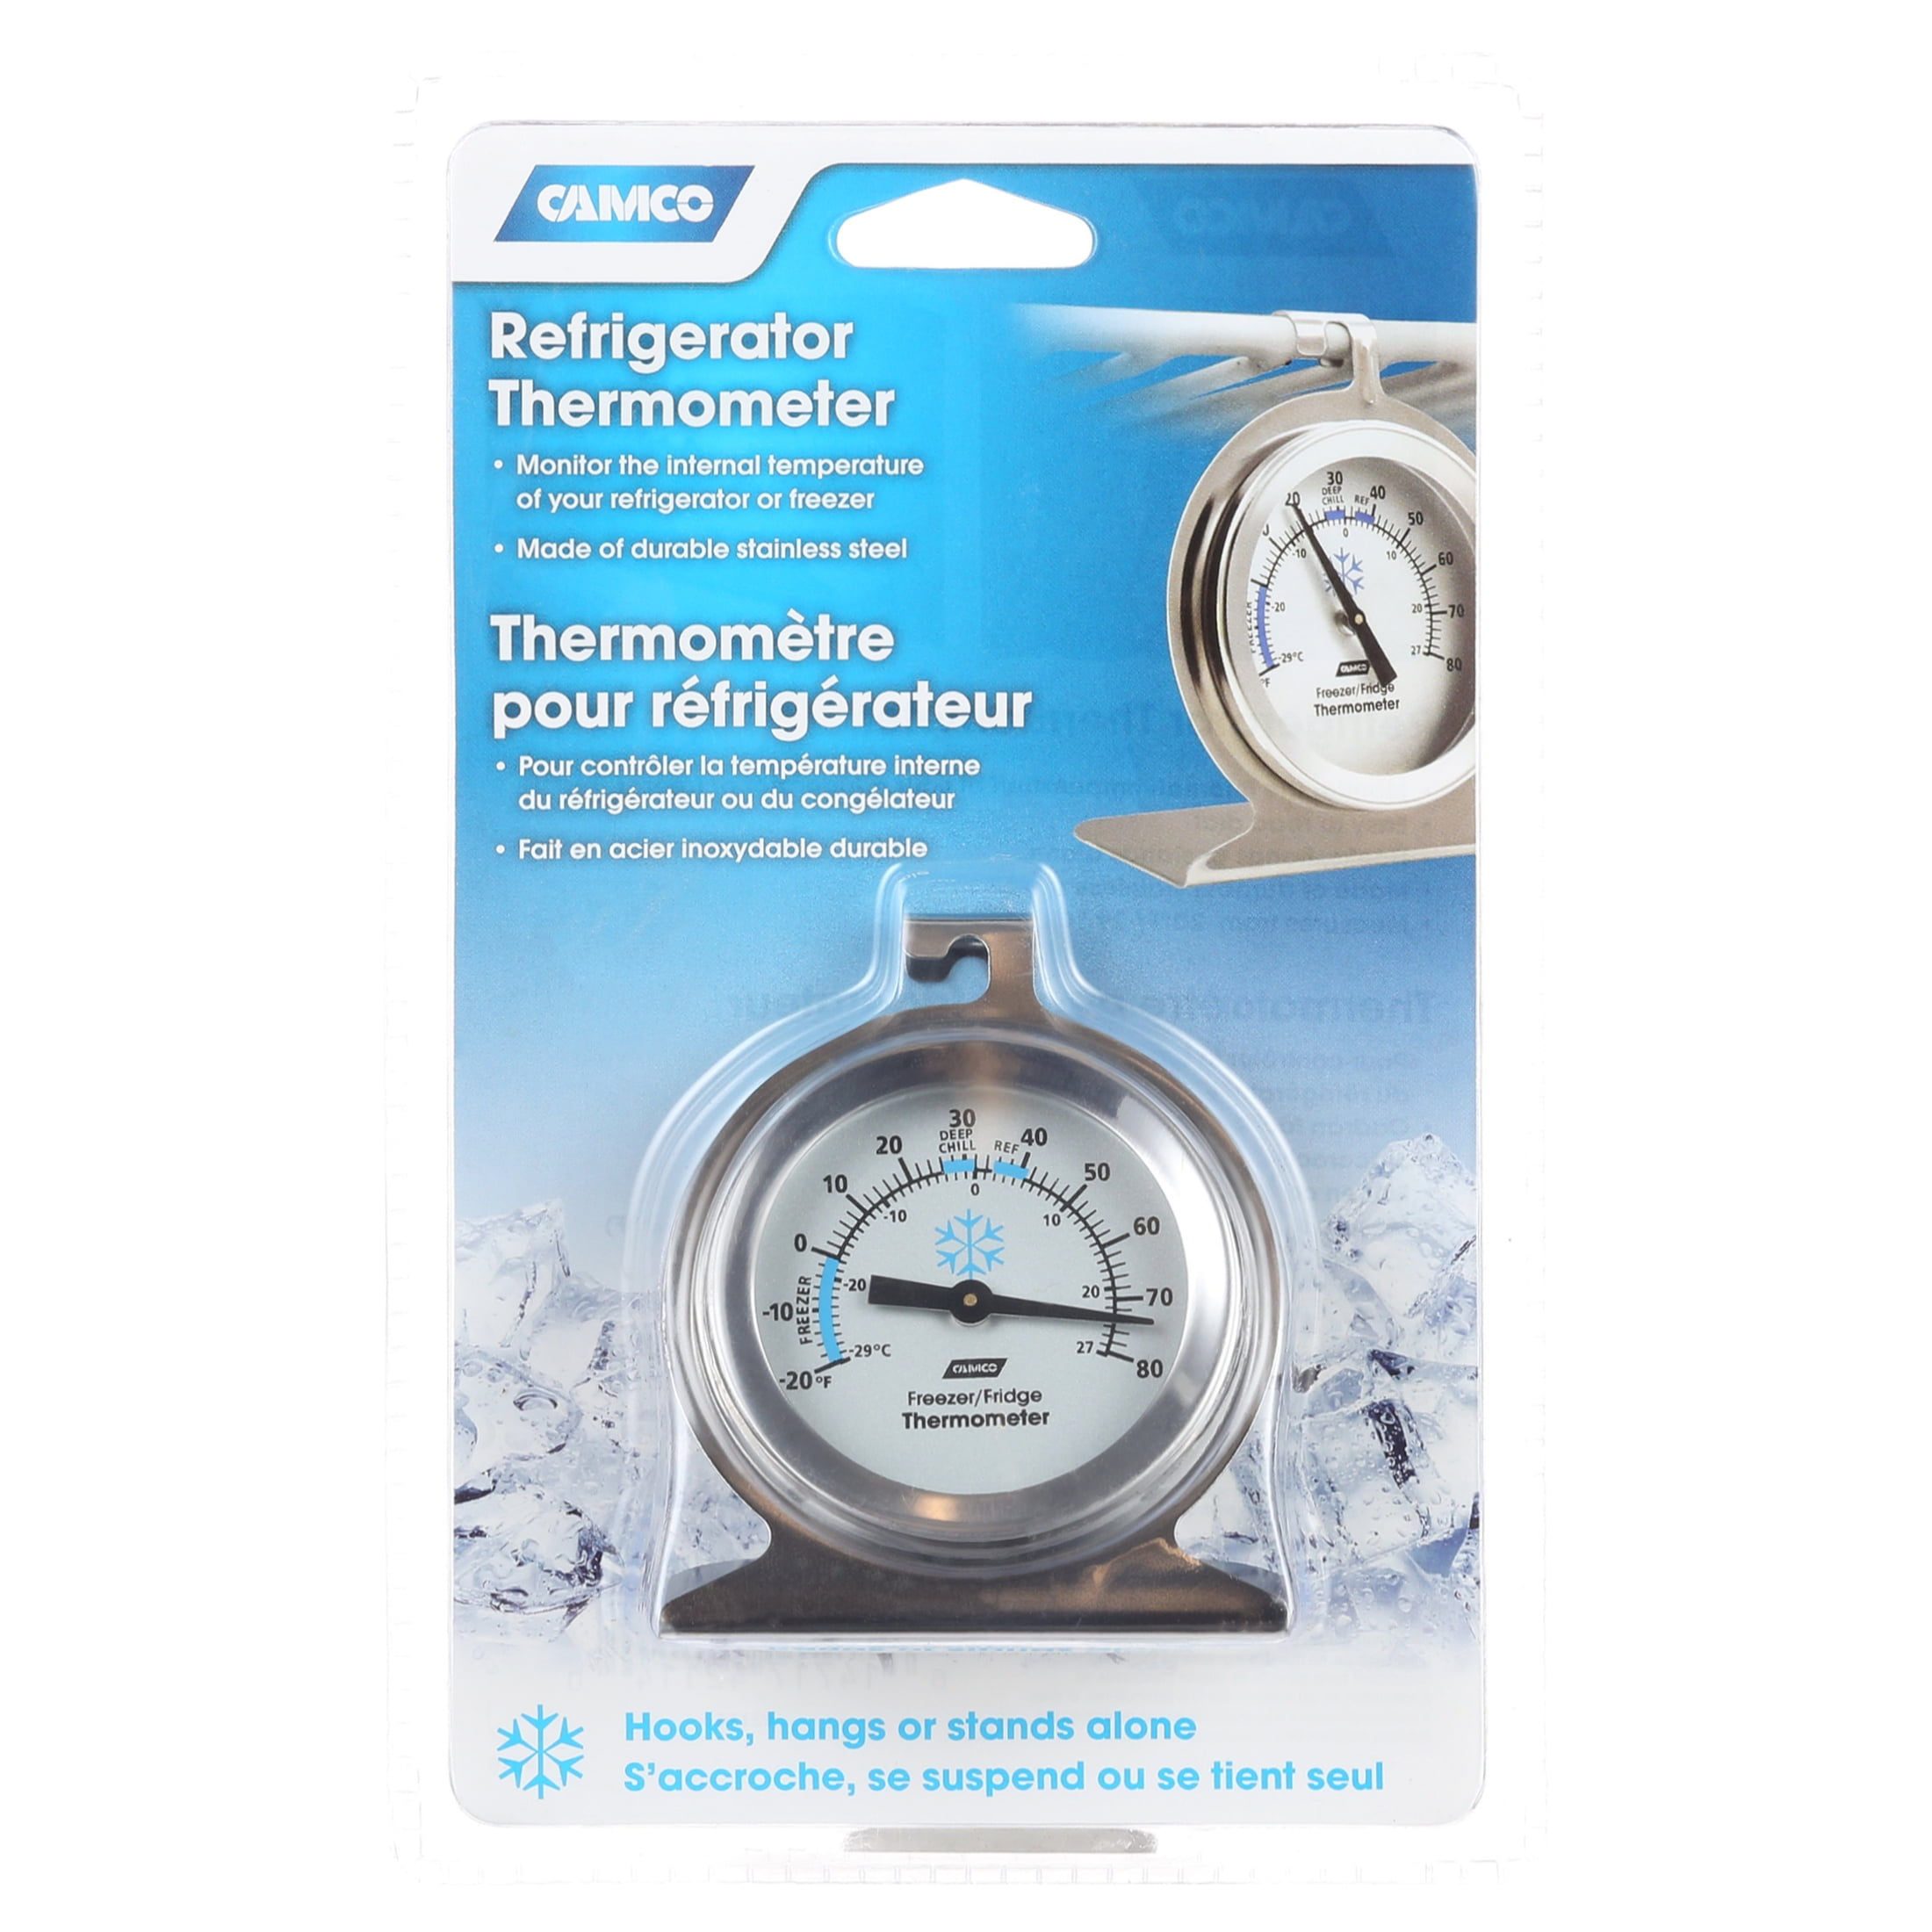 Refrigerator temperature monitoring - Tec4med Lifescience